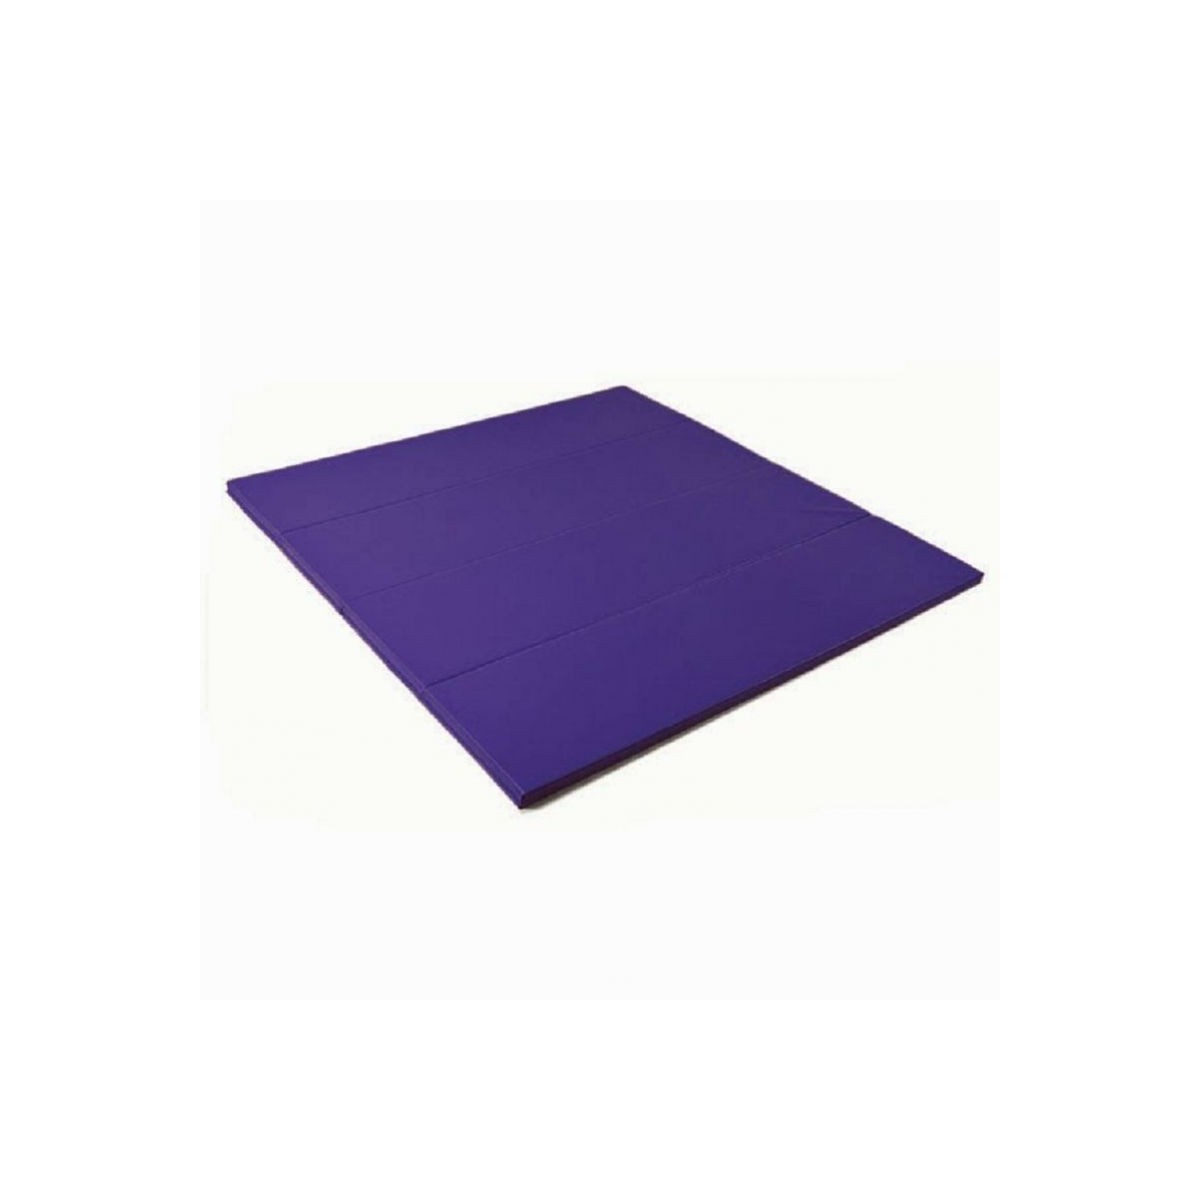 Surface d'évolution repliable couleur violette - 1